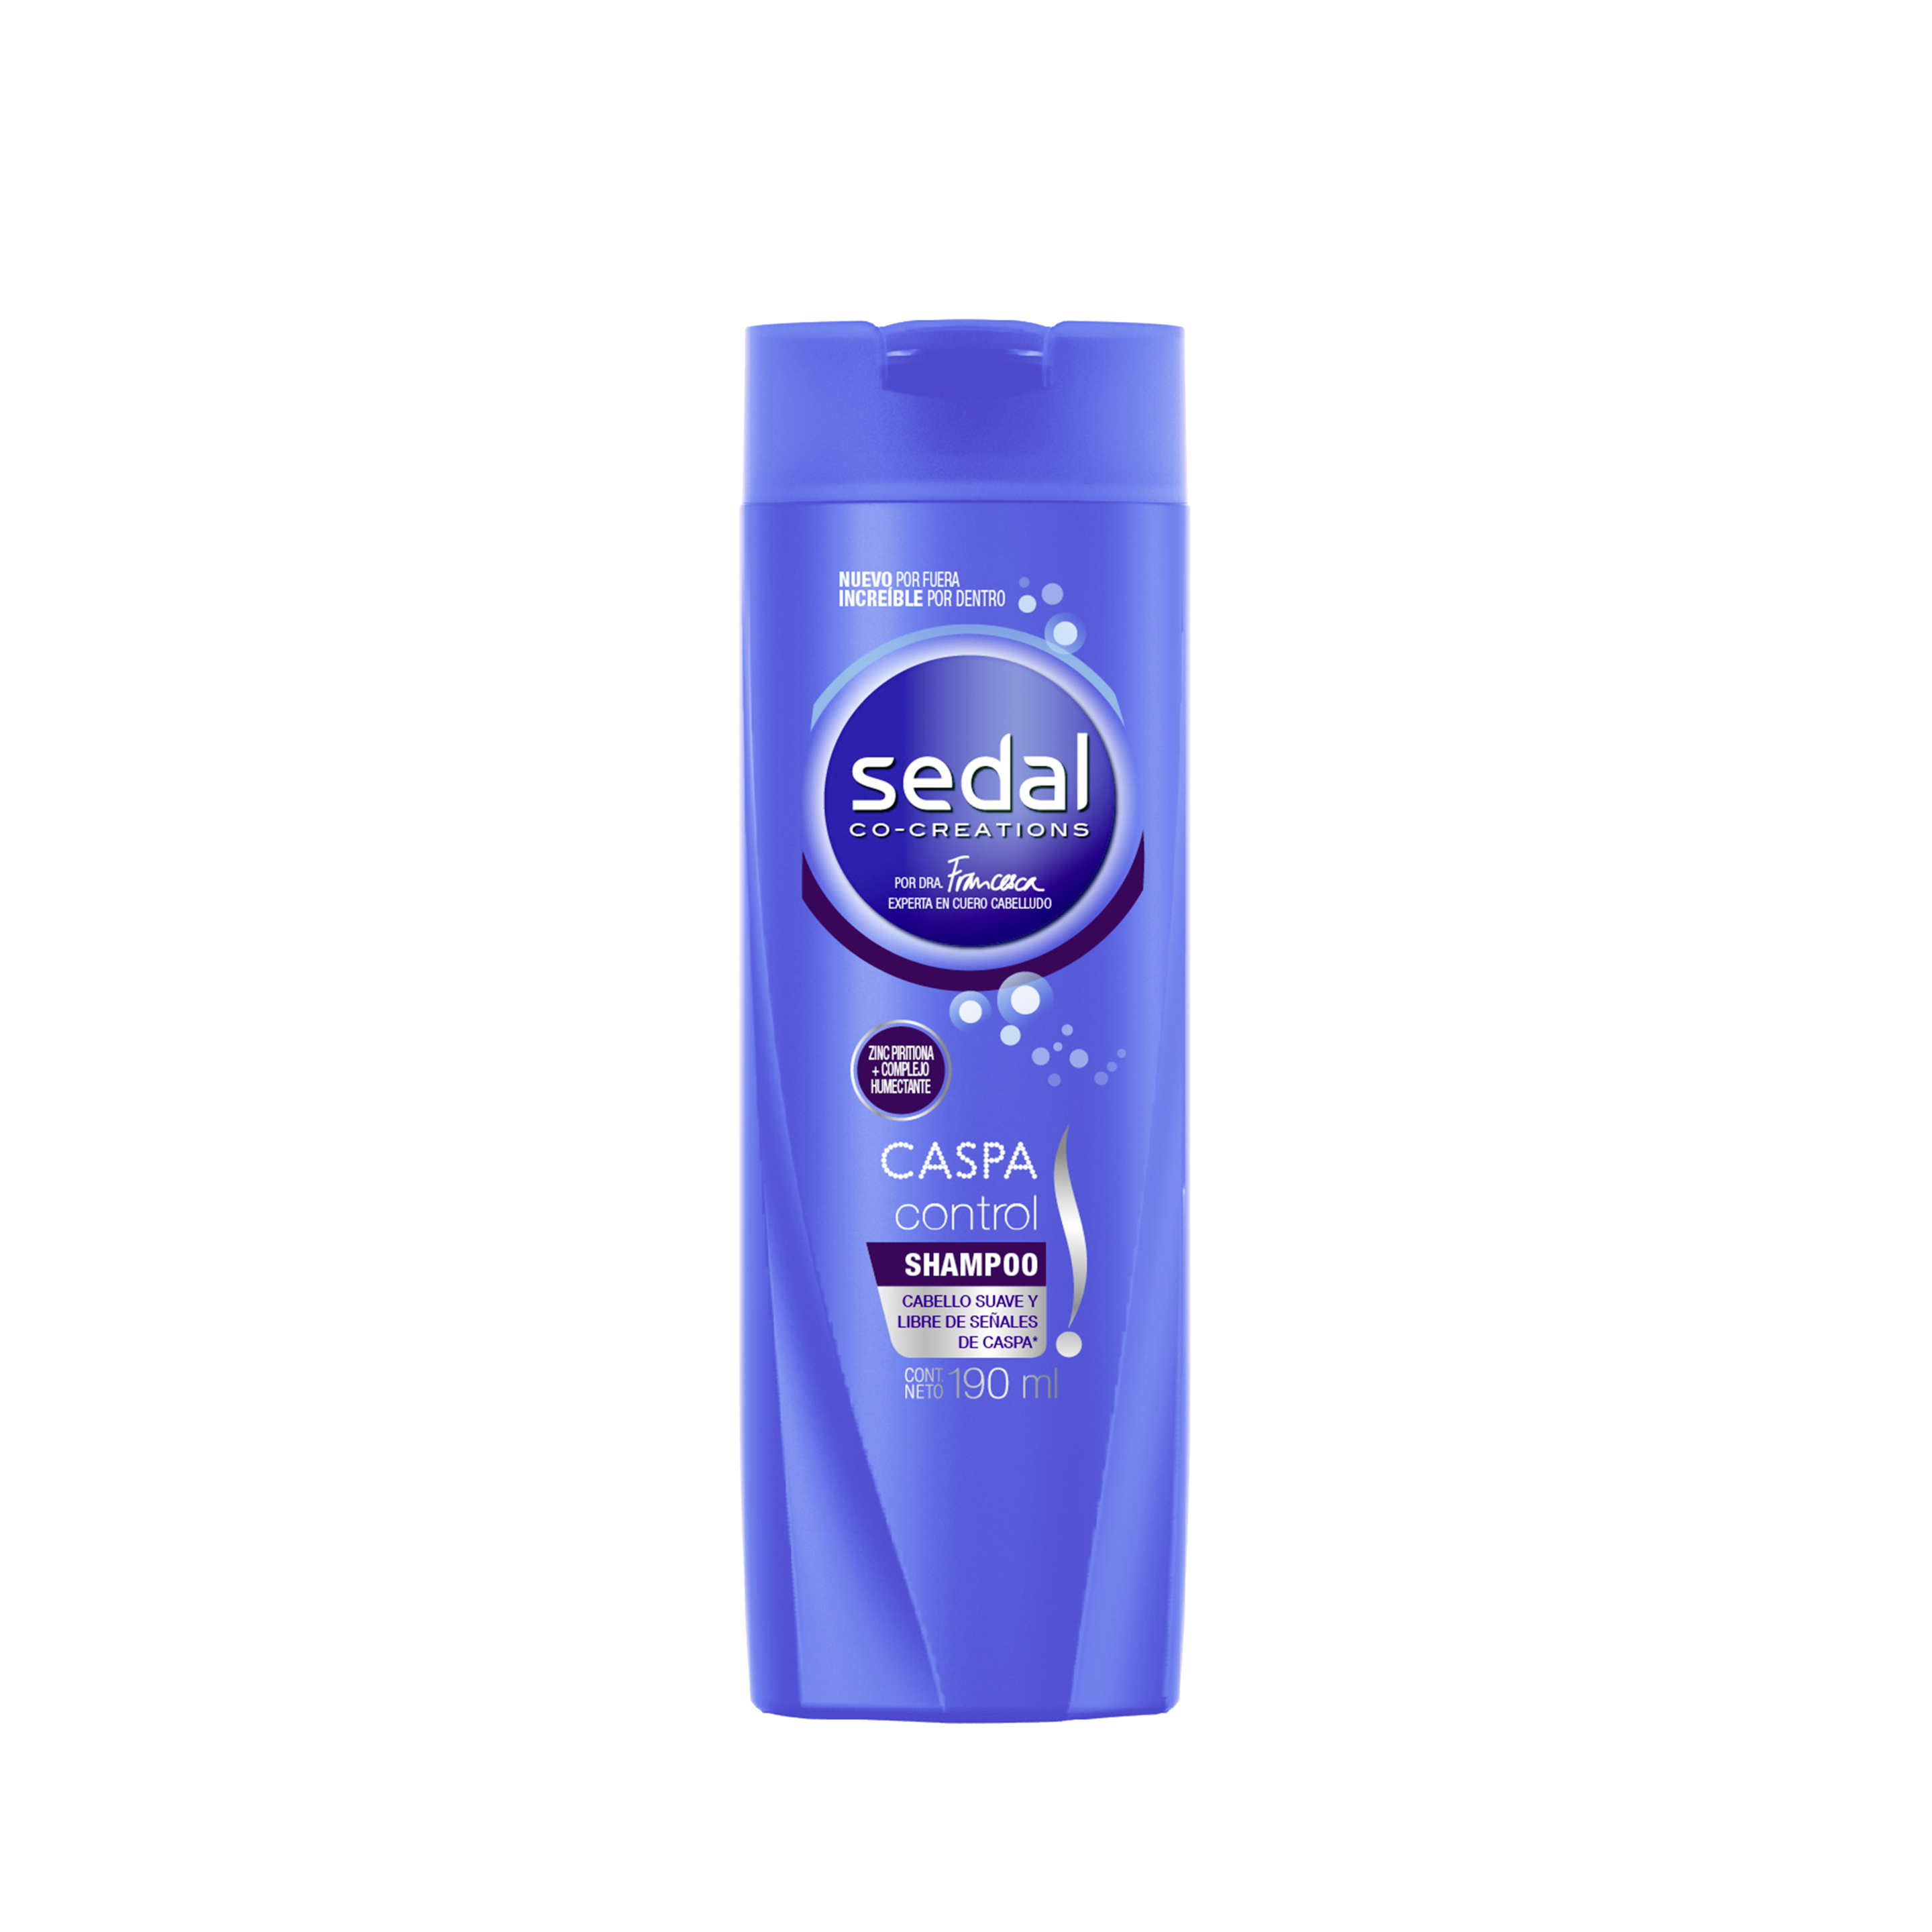 Imagen al frente del paquete Sedal Caspa Control Shampoo 190ml